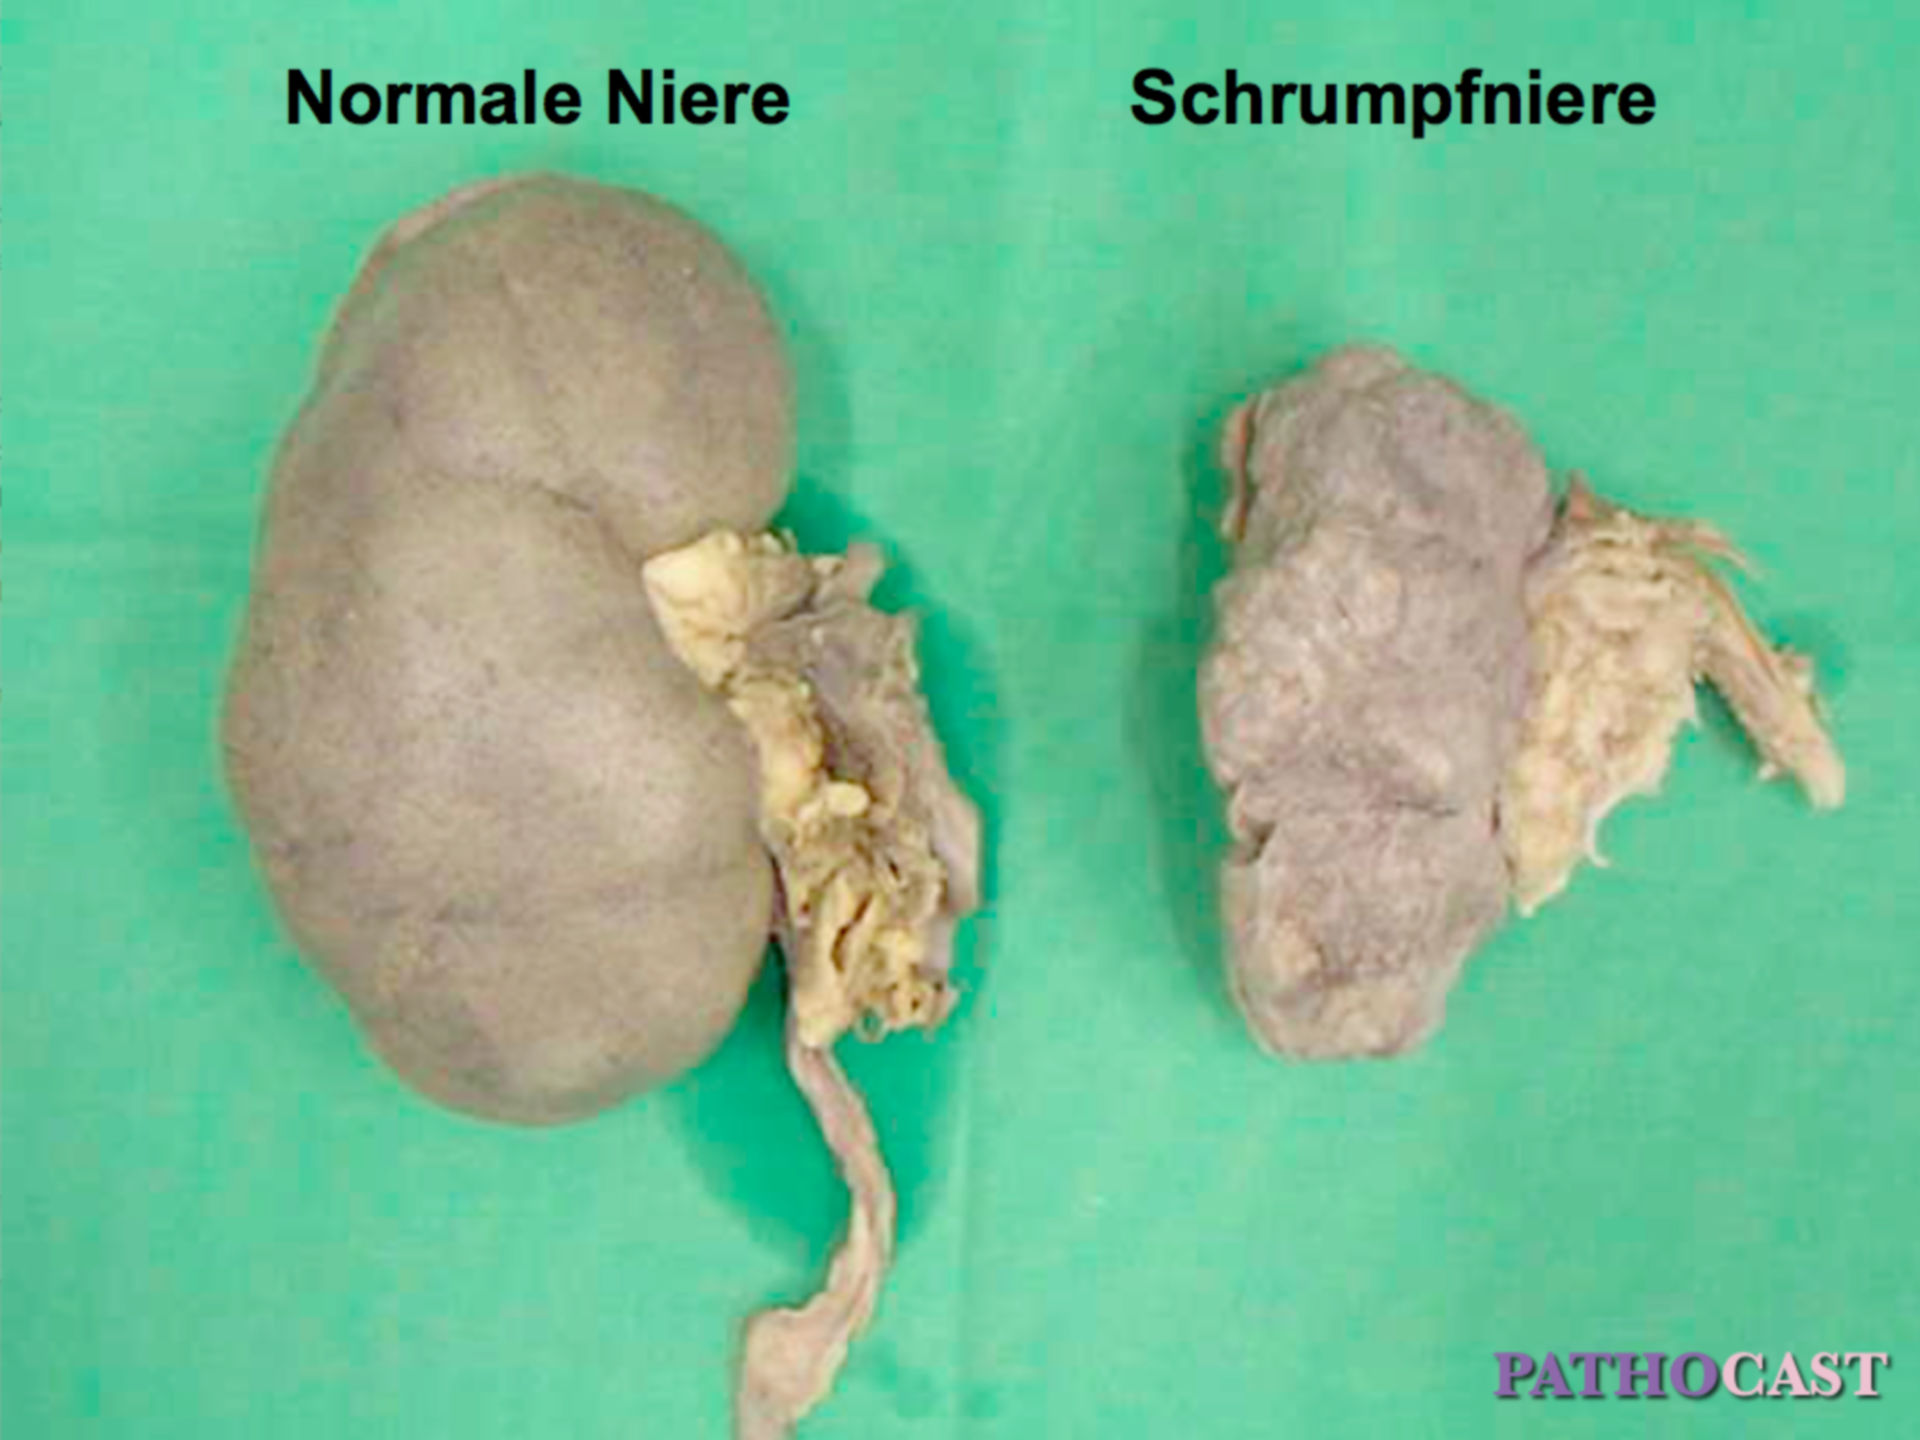 Shrunken kidney